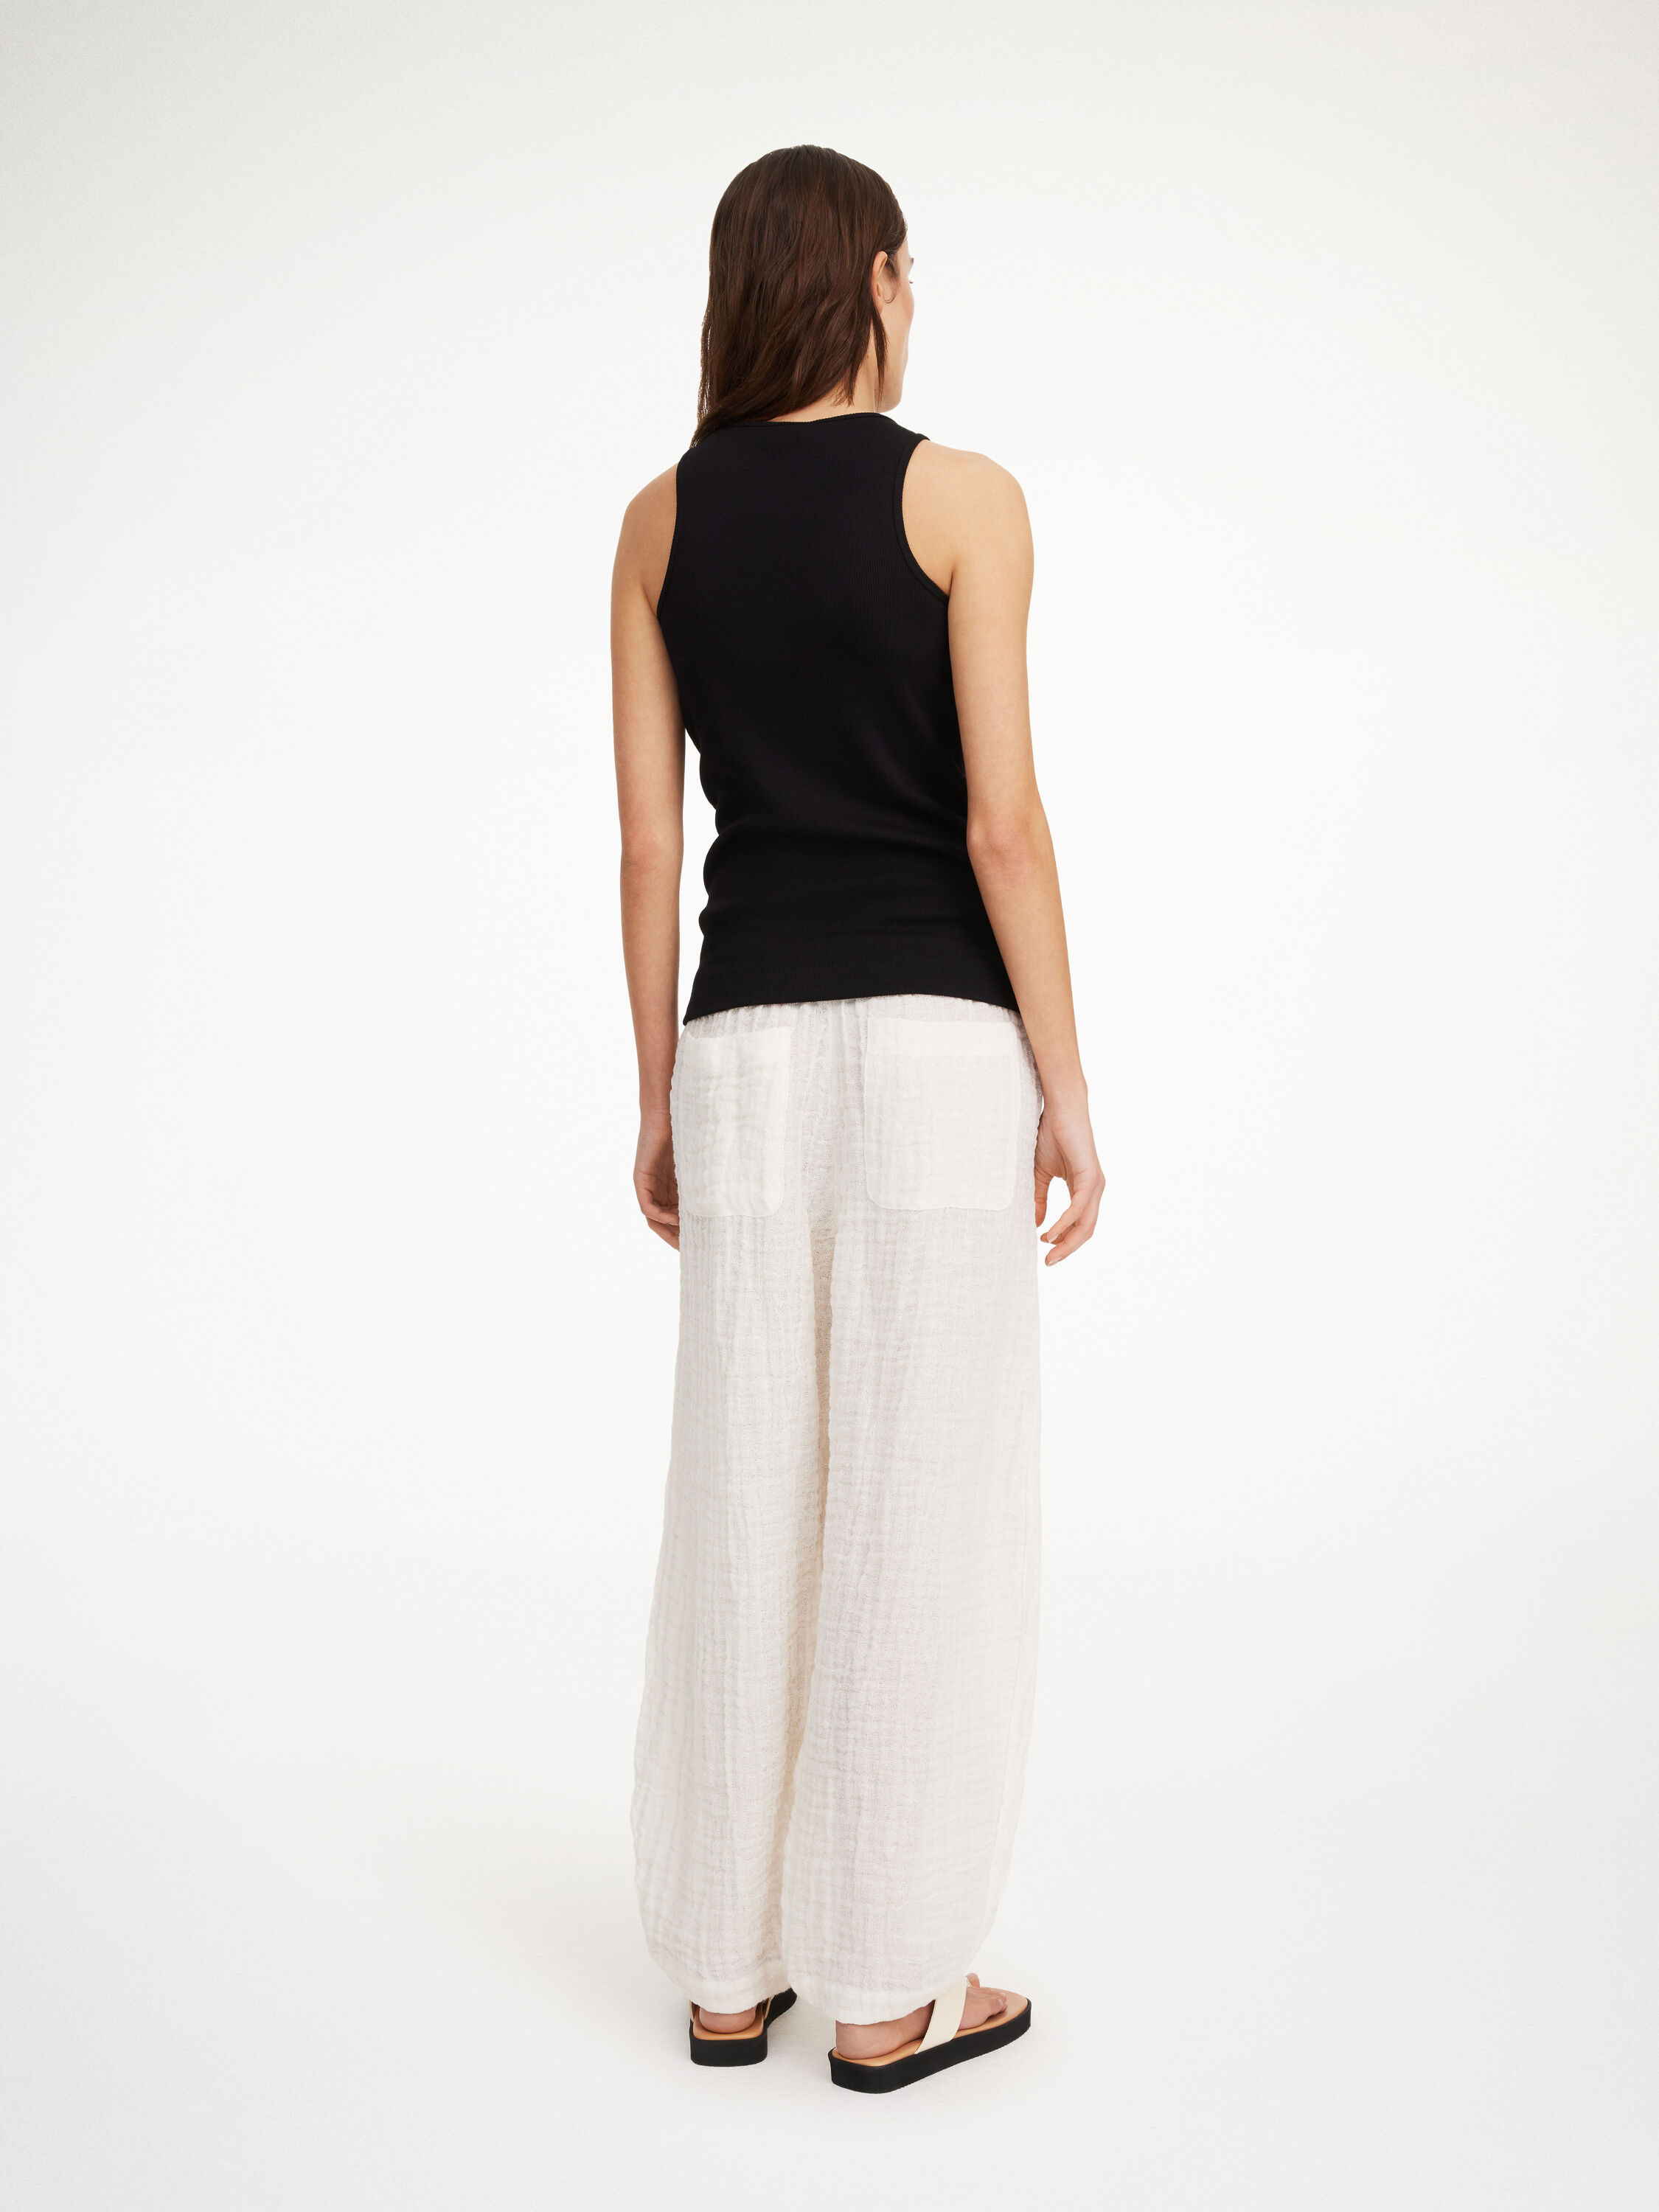 LION Organic Linen Trousers - Black - Komodo Fashion